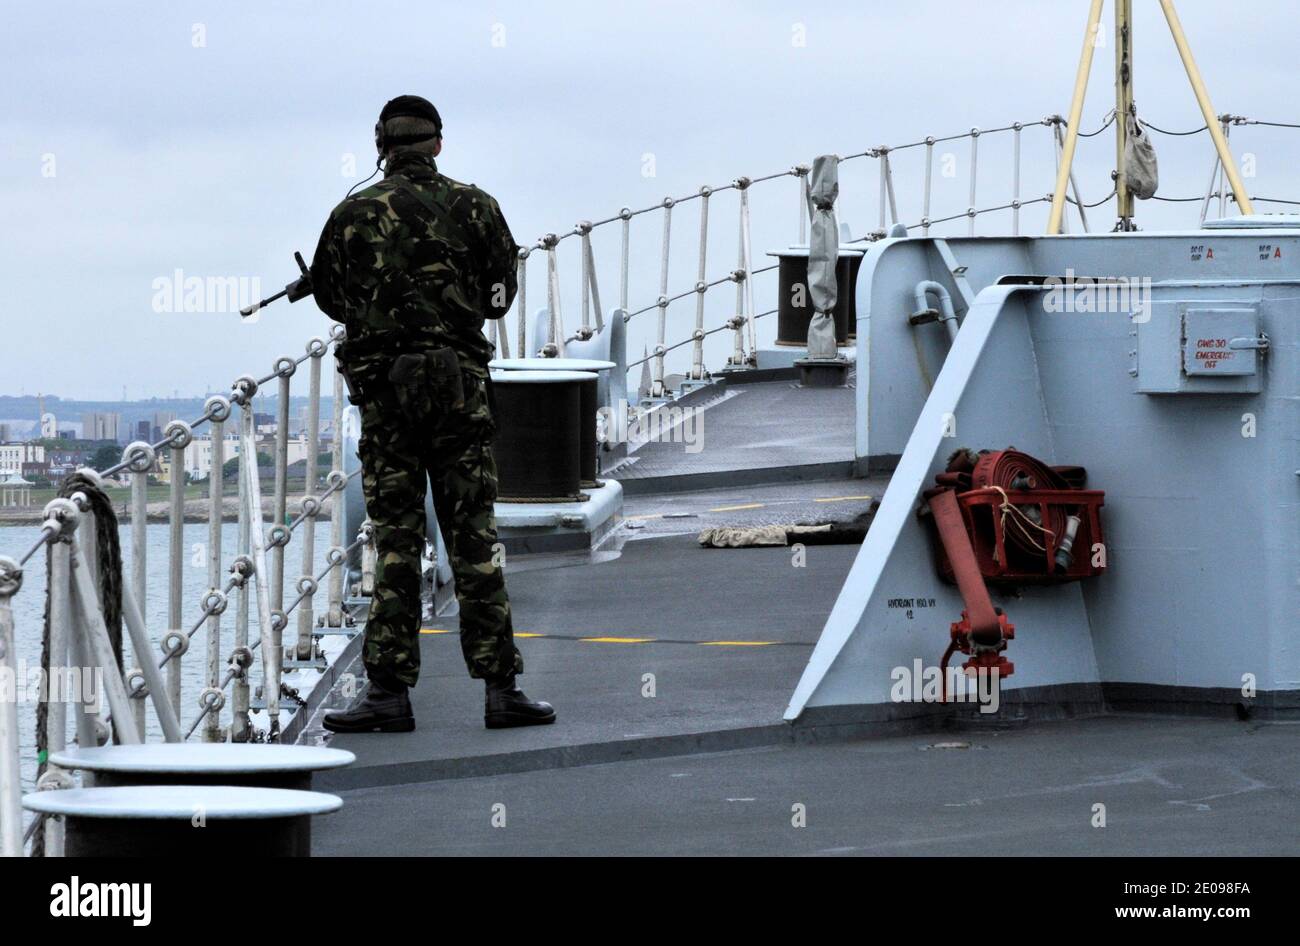 AJAXNETPHOTO. 2008. PORTSMOUTH, ENGLAND. - ZERSTÖRER SICHERHEIT - BEWAFFNETE ROYAL MARINE AUF DEM VORDECK DES TYP 42 ZERSTÖRER HMS GLOUCESTER VERLASSEN HAFEN. FOTO: JONATHAN EASTLAND/AJAX. REF.: D082306_203 Stockfoto